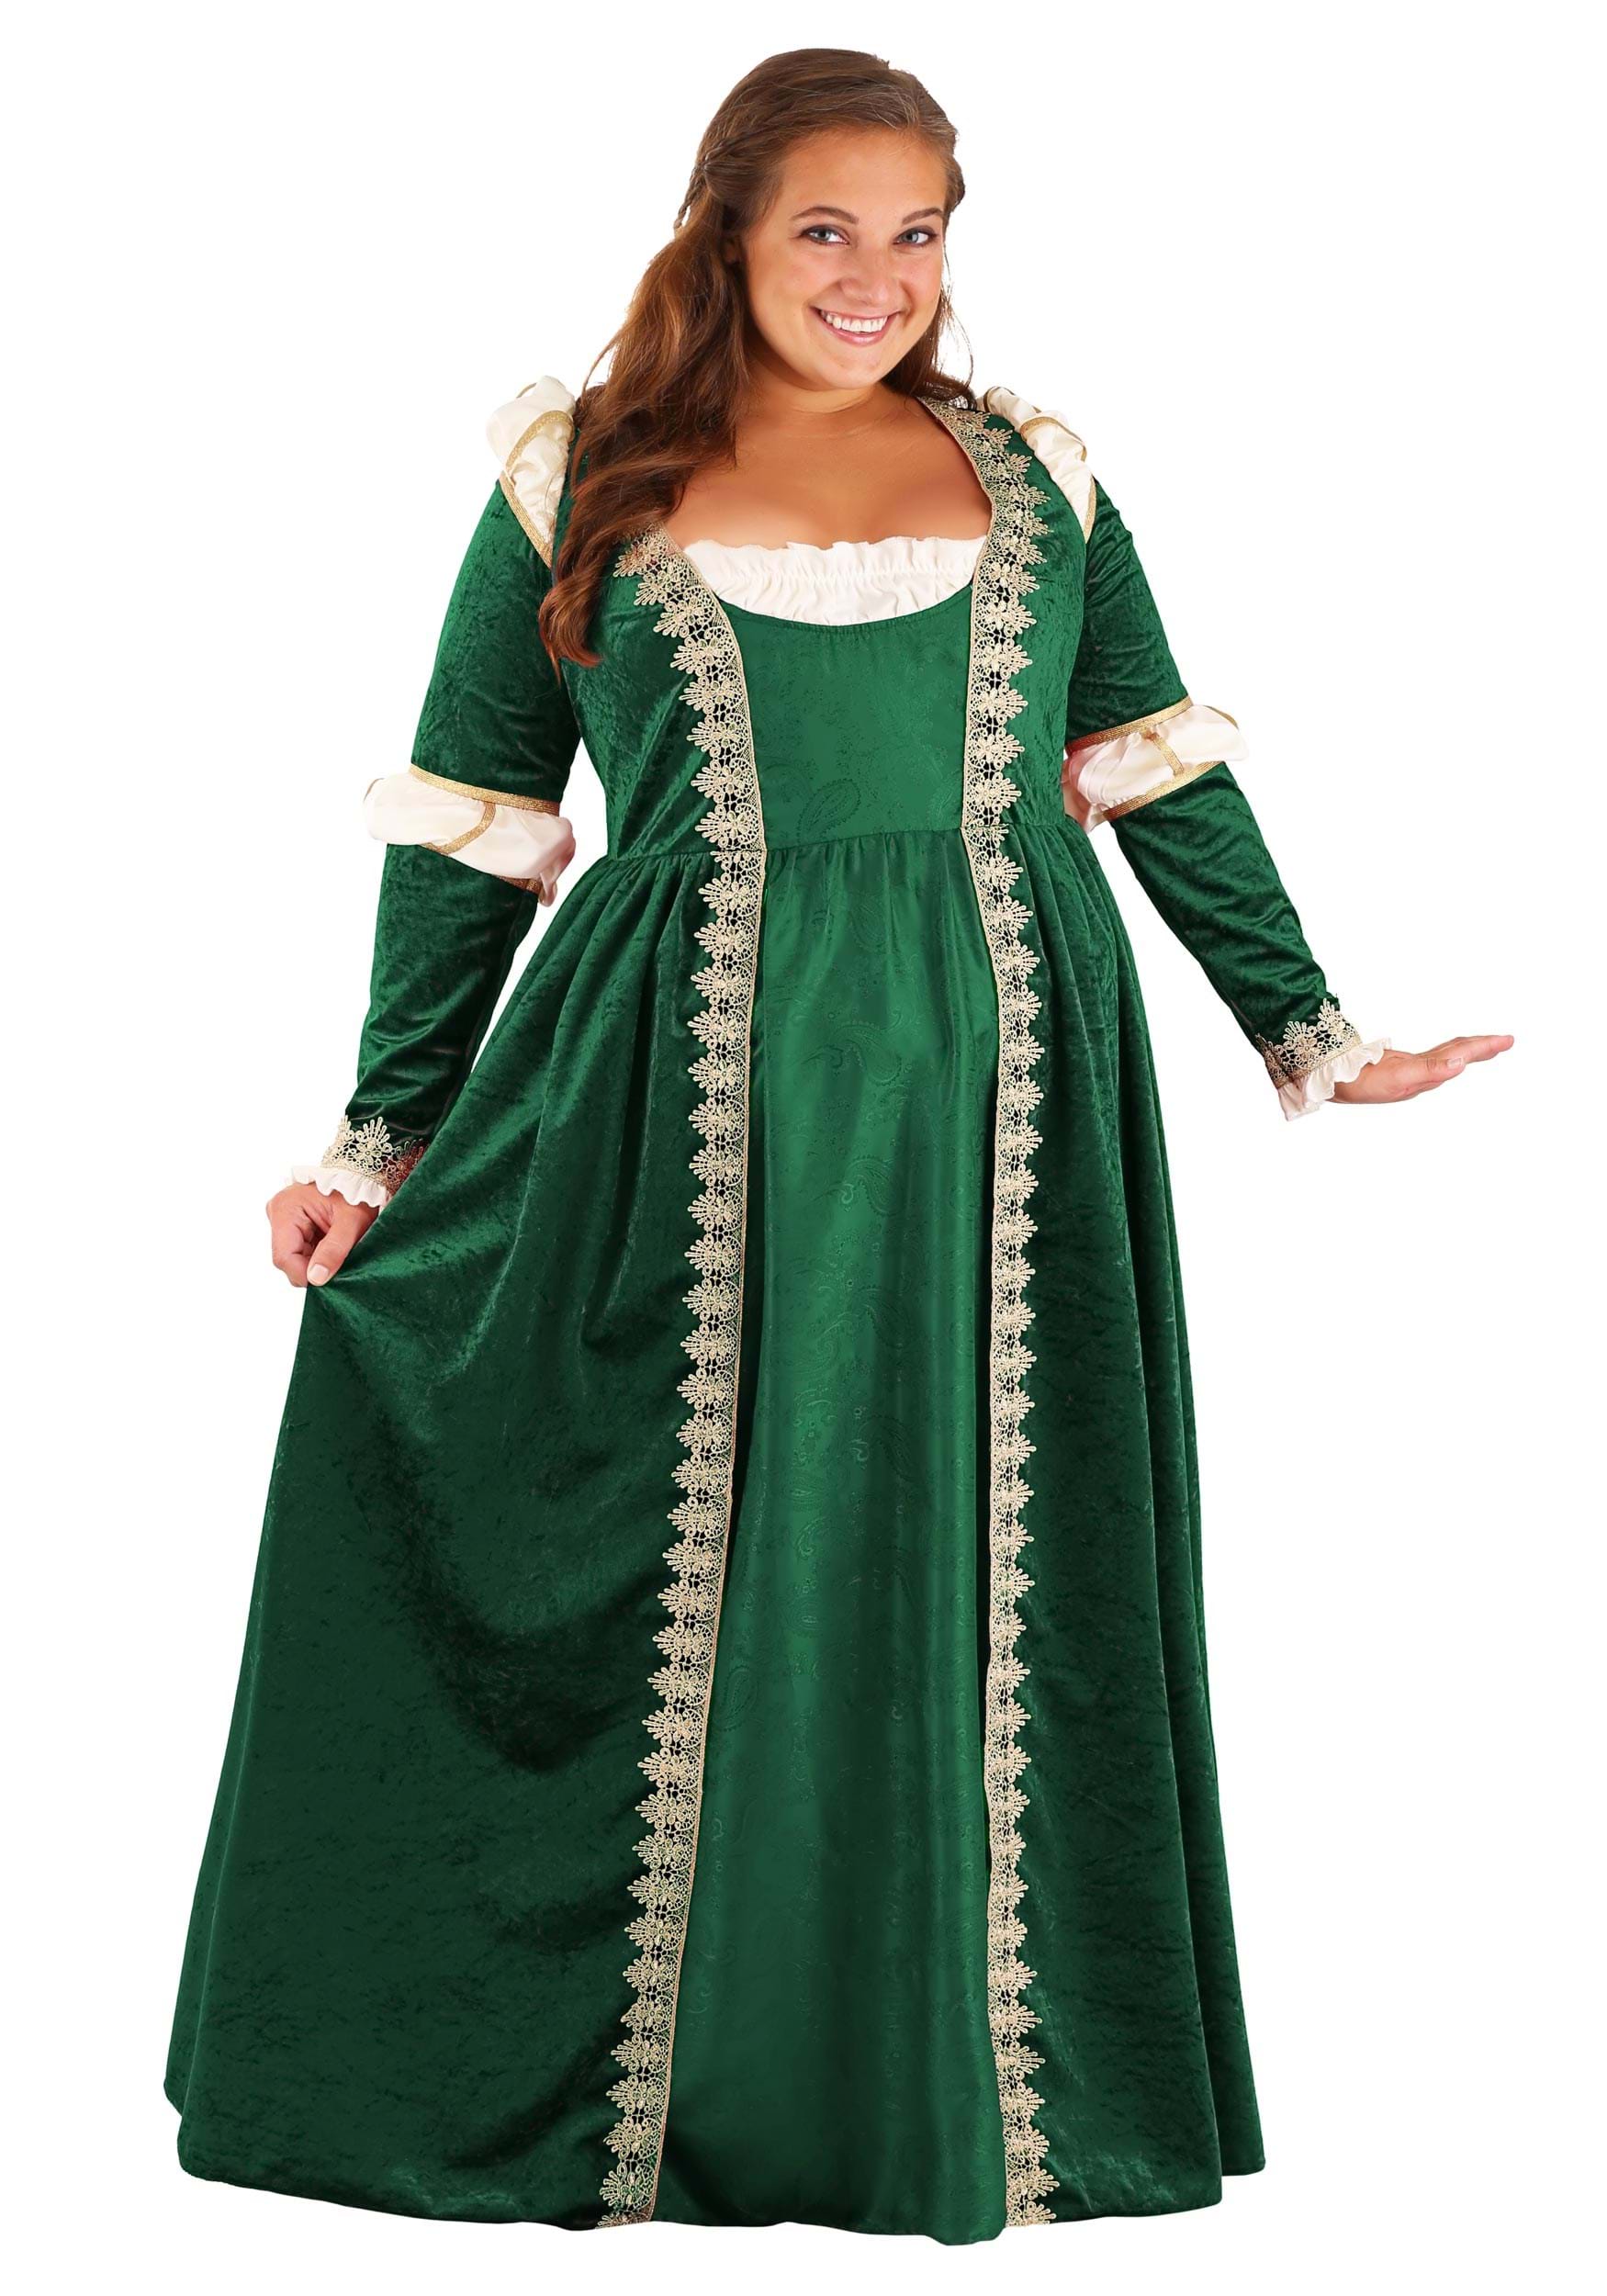 Women's Plus Size Emerald Maiden Fancy Dress Costume